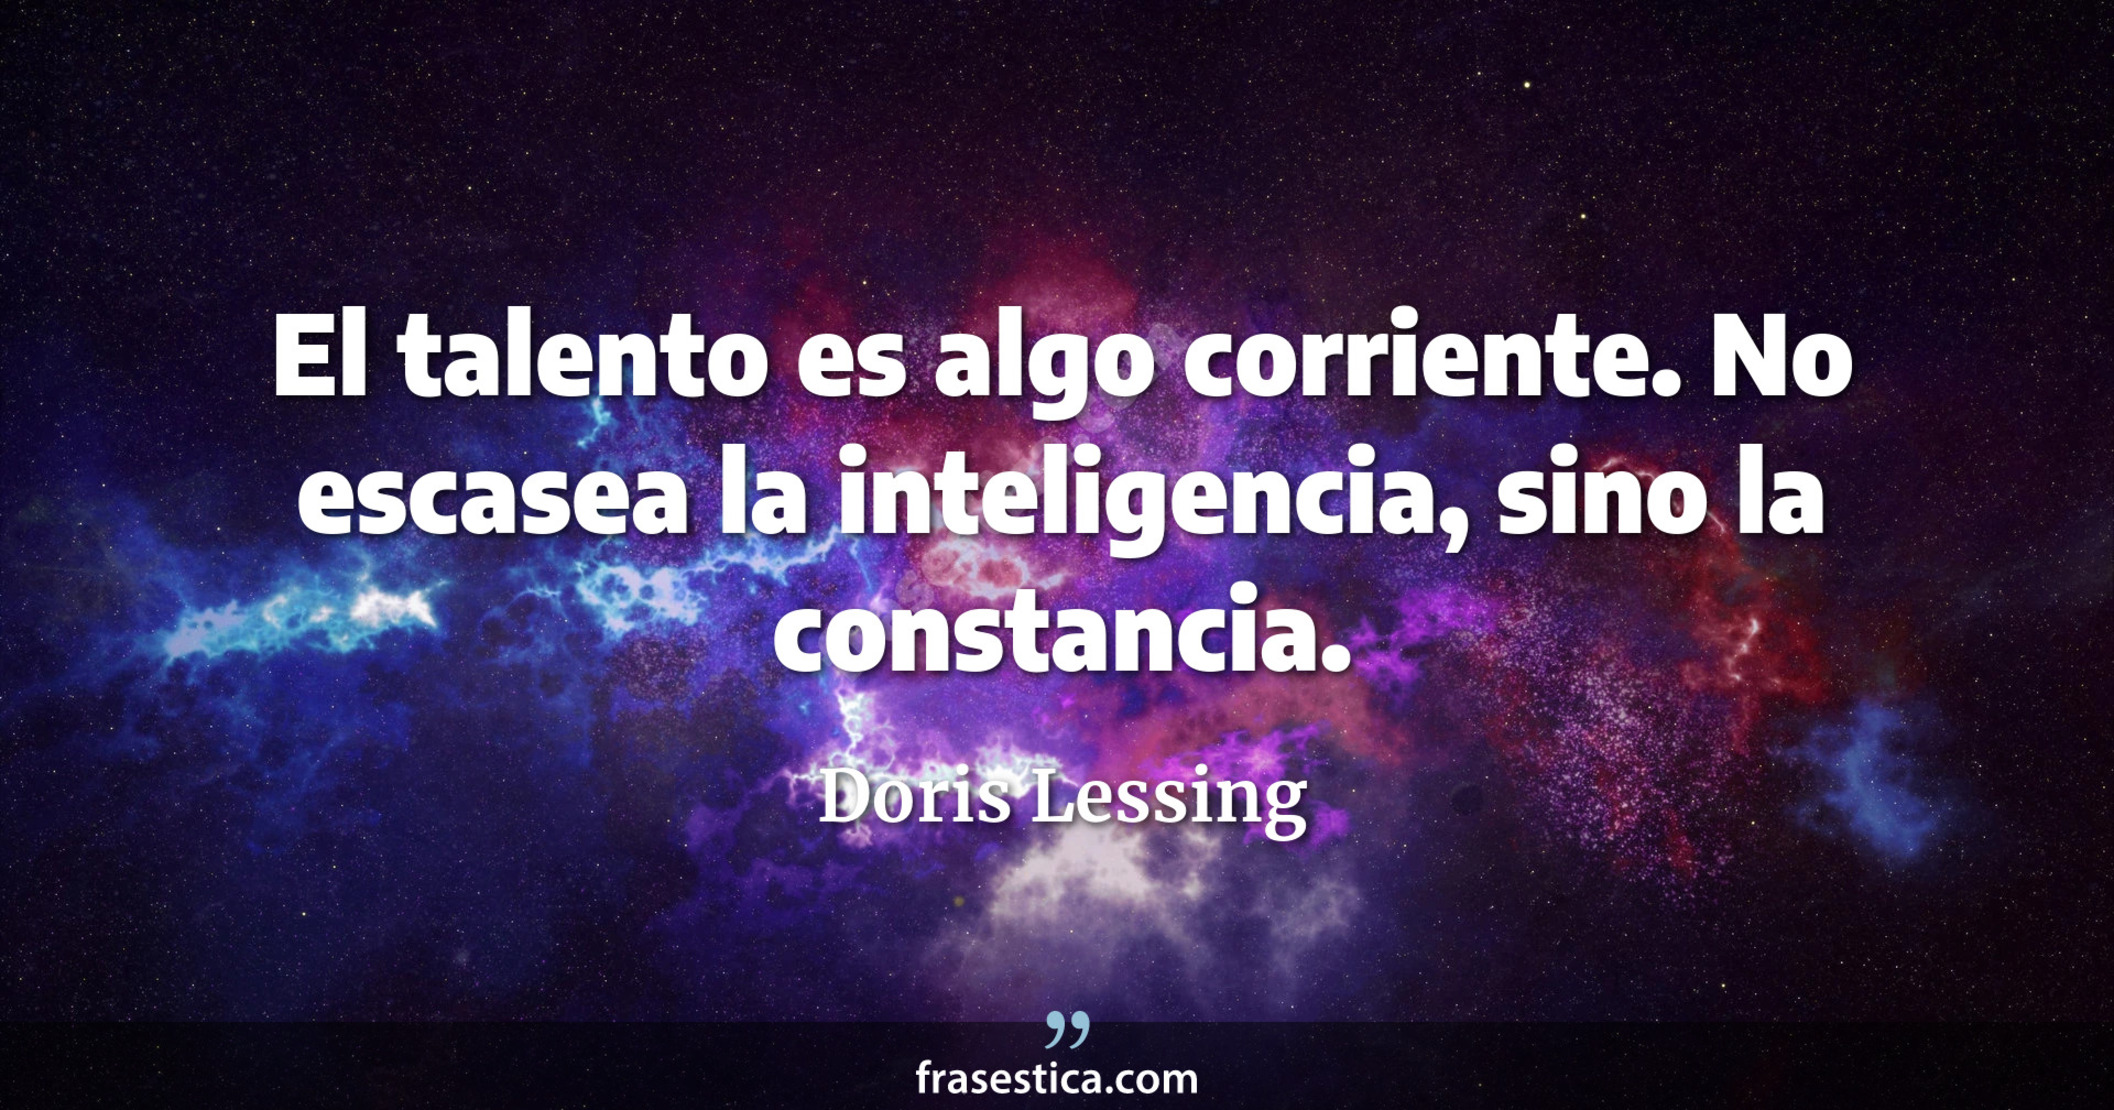 El talento es algo corriente. No escasea la inteligencia, sino la constancia. - Doris Lessing